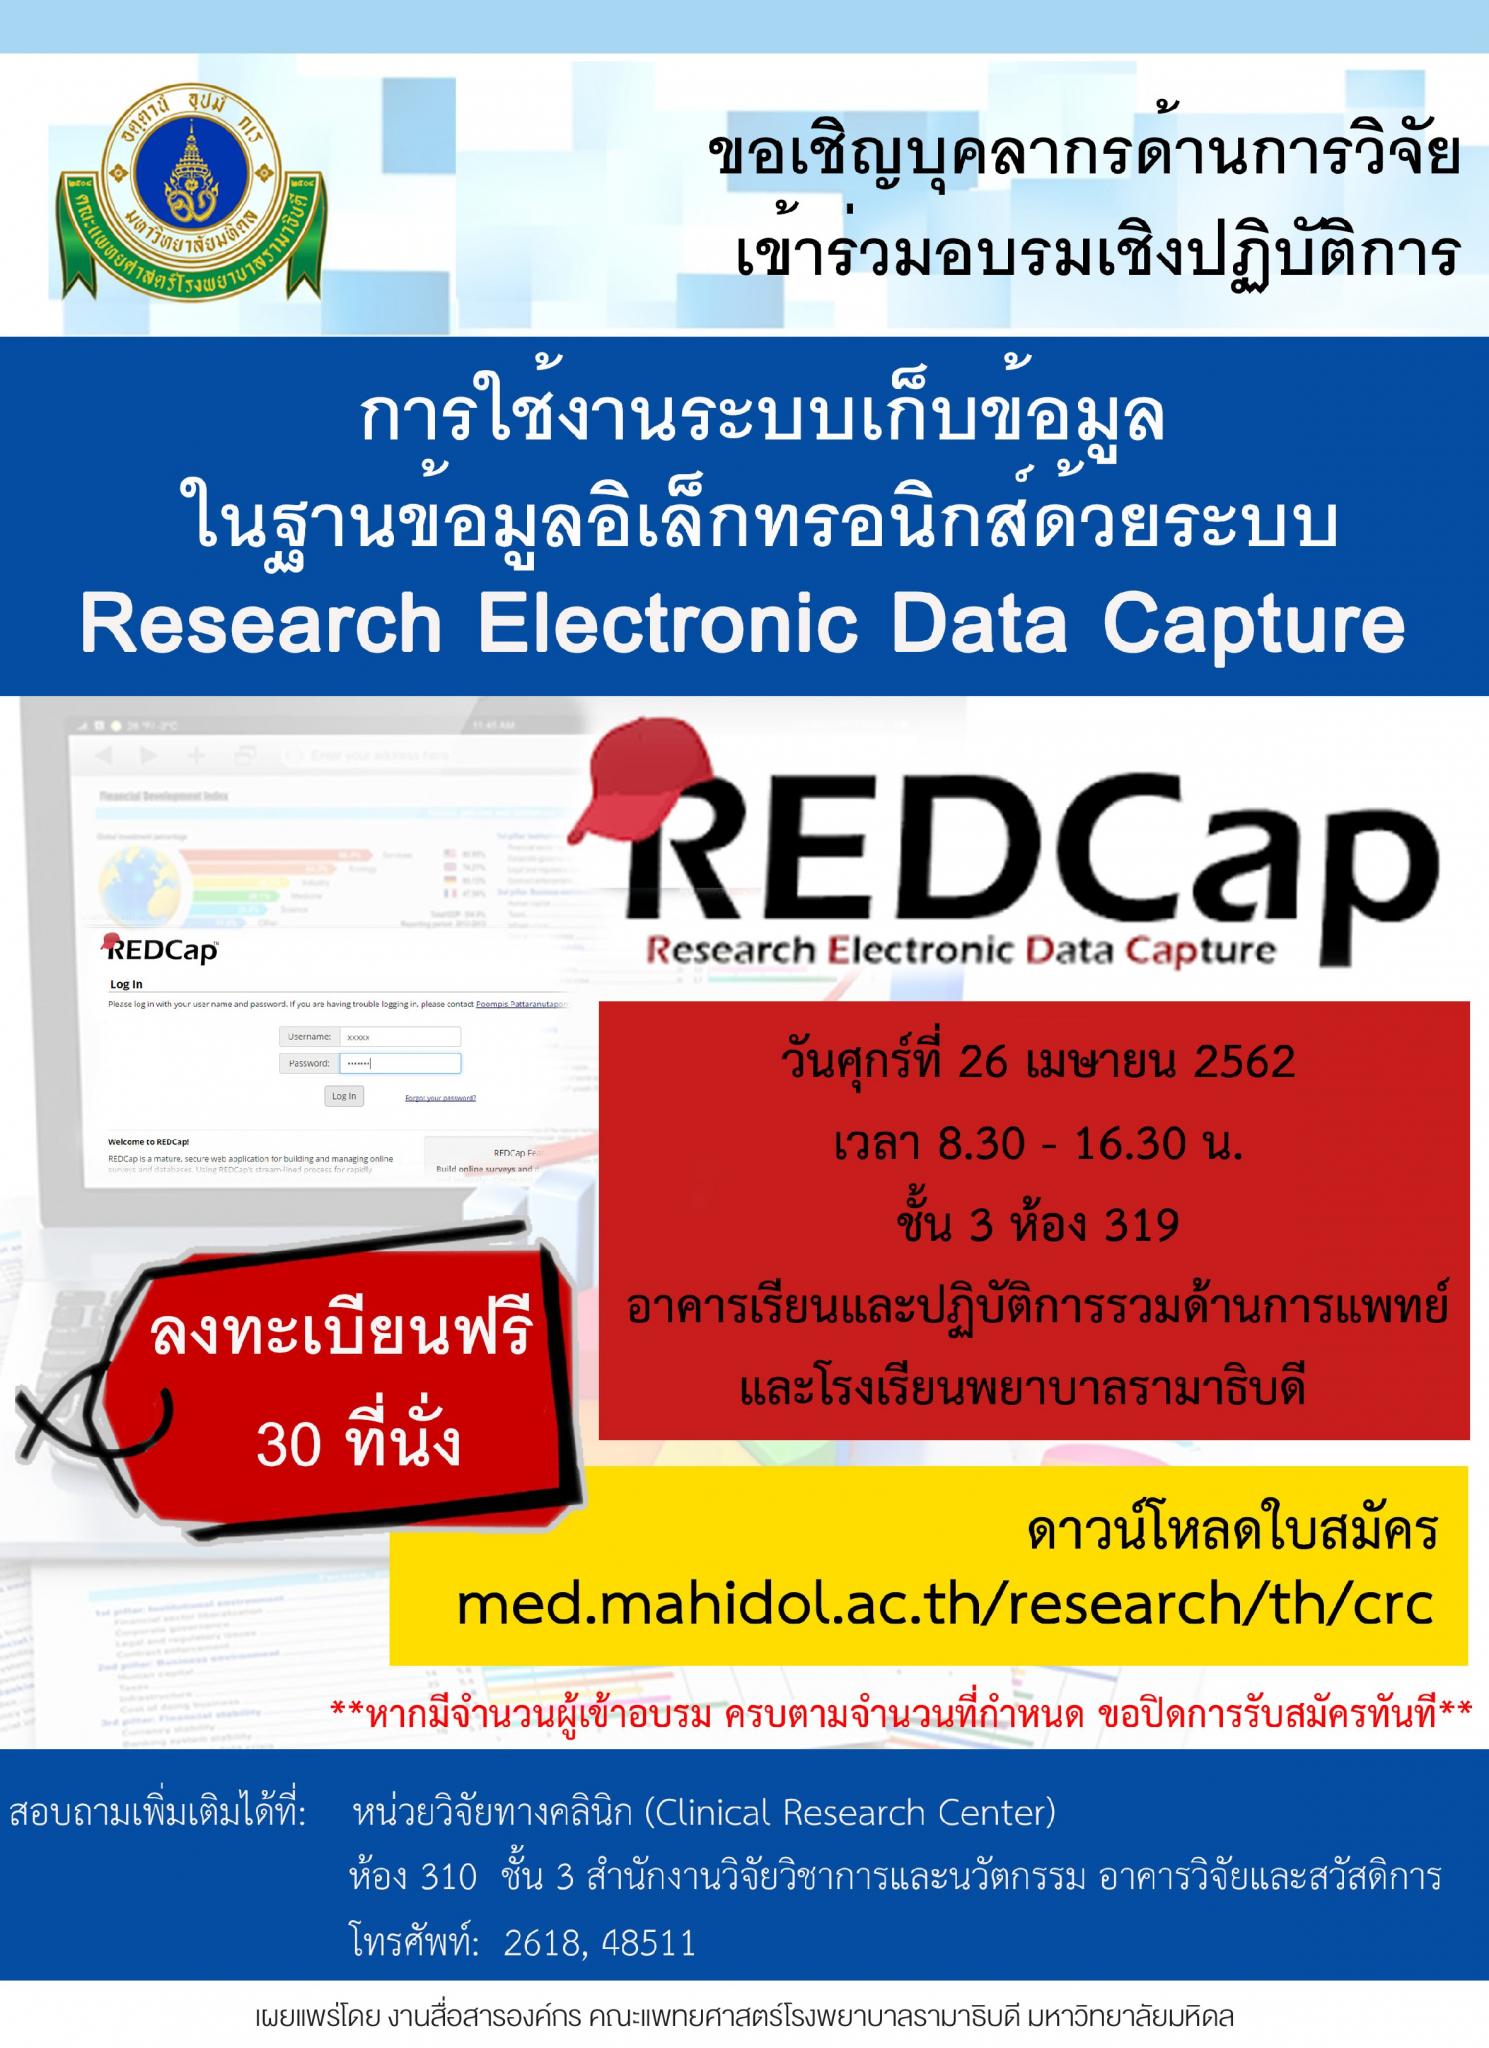 การใช้งานระบบเก็บข้อมูลในฐานข้อมูลอิเล็กทรอนิกส์ด้วยระบบ  Research Electronic Data Capture (REDCap)